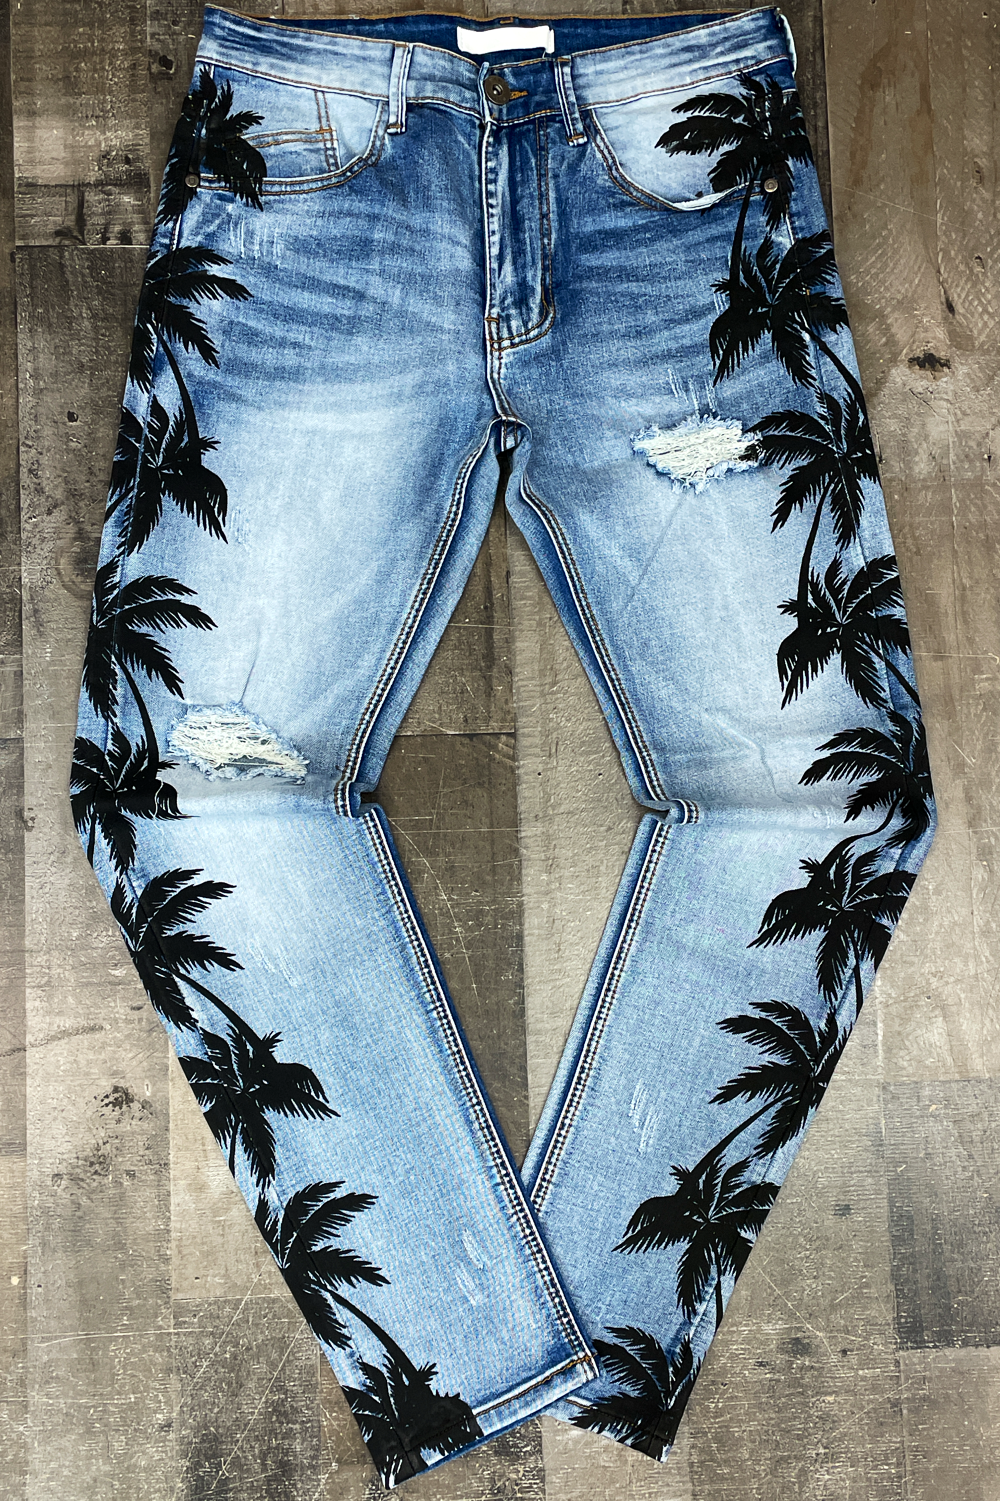 KDNK- palm tree jeans